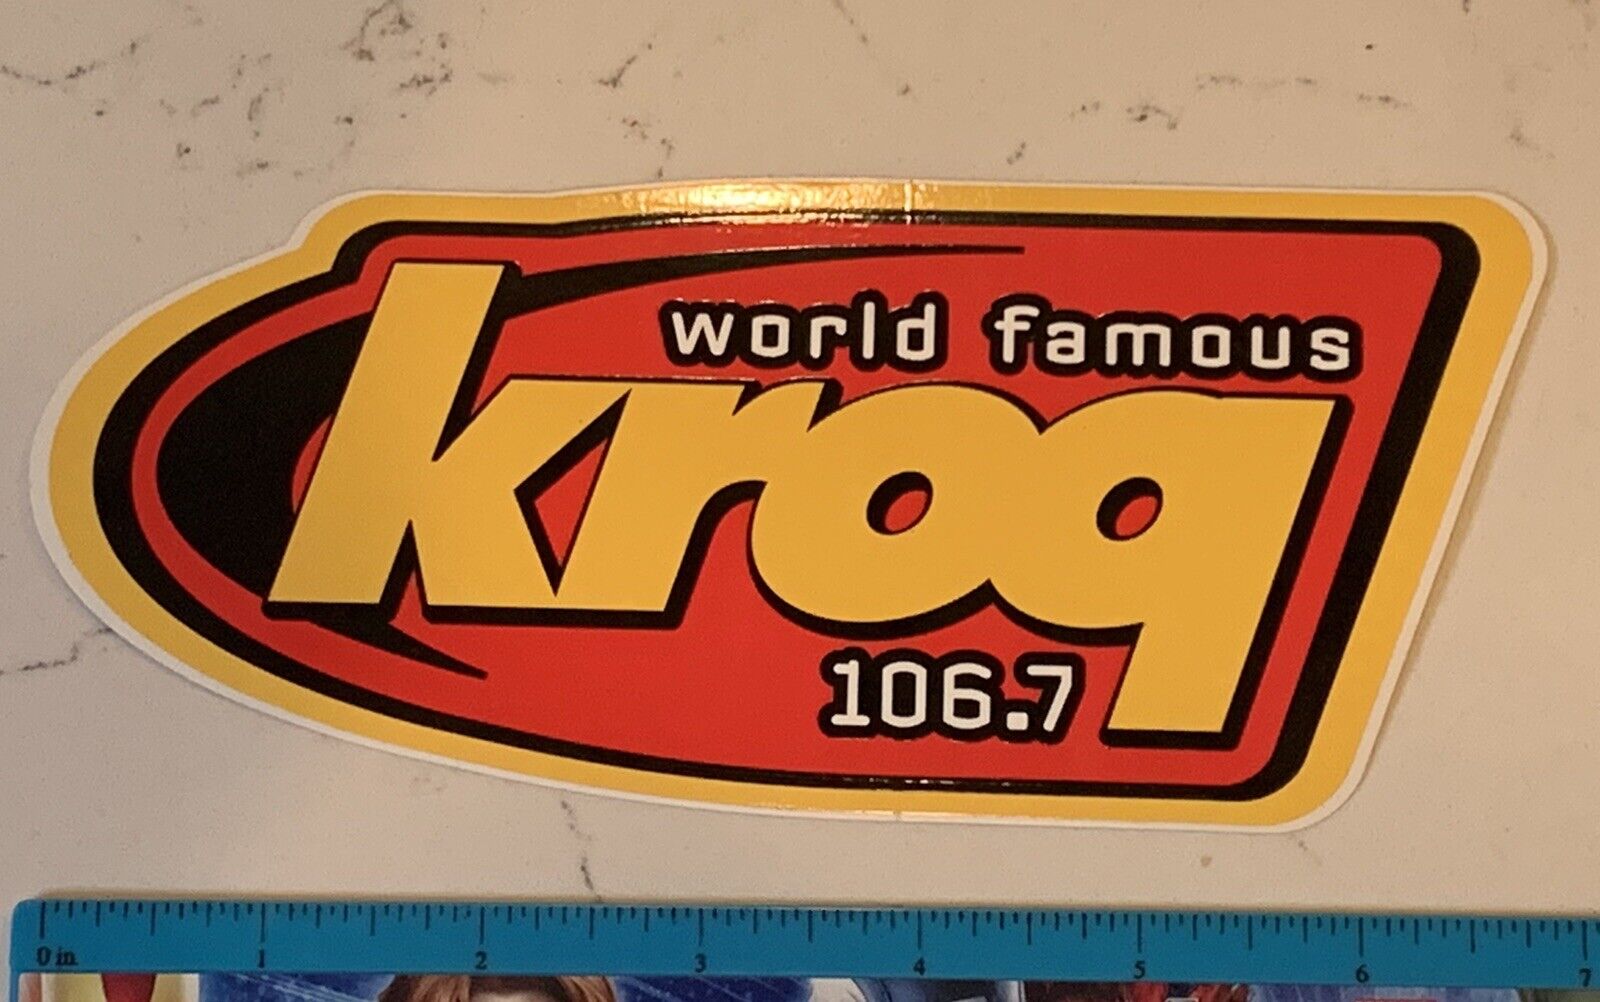 KROQ 106.7 FM Sticker - World Famous - Glossy vinyl die-cut 7” x 3” def tones